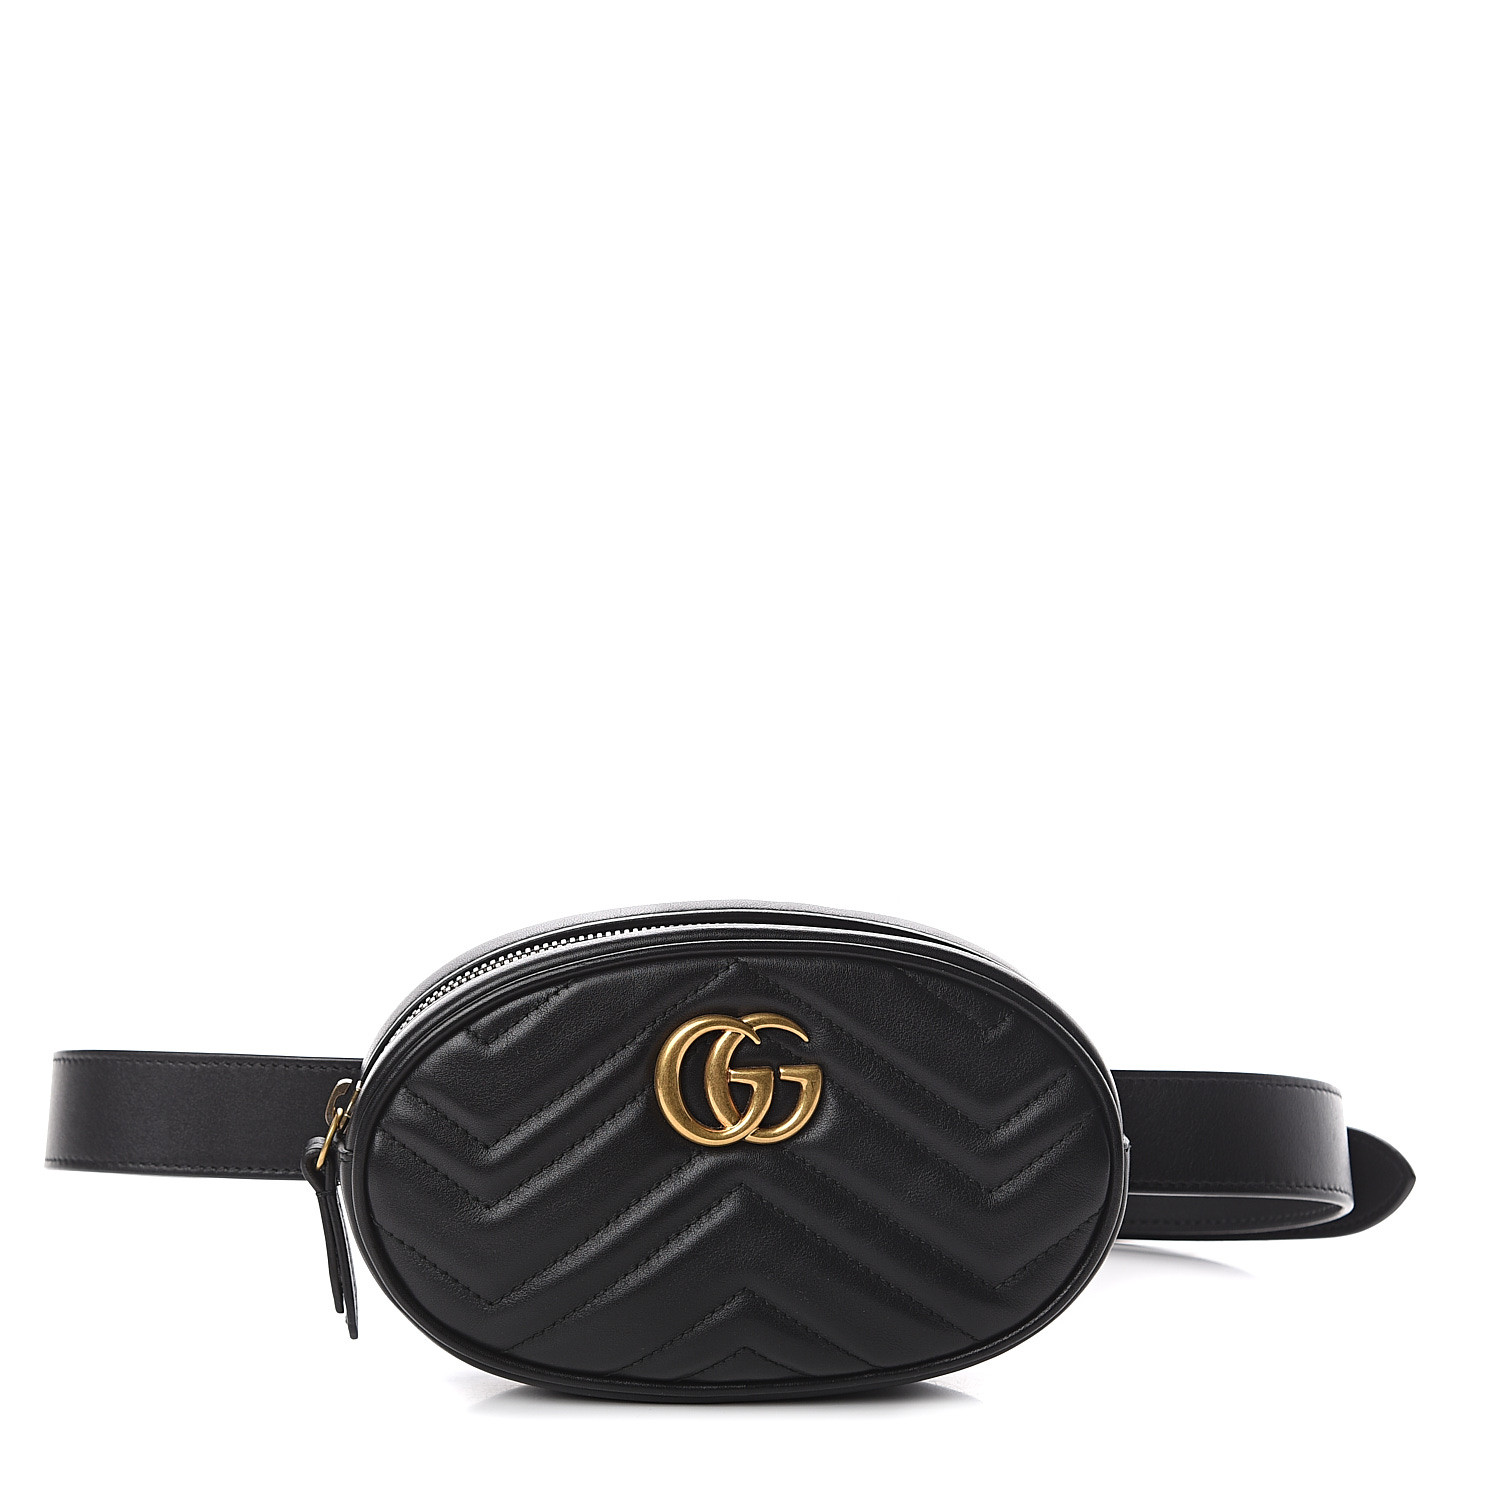 authentic gucci belt bag